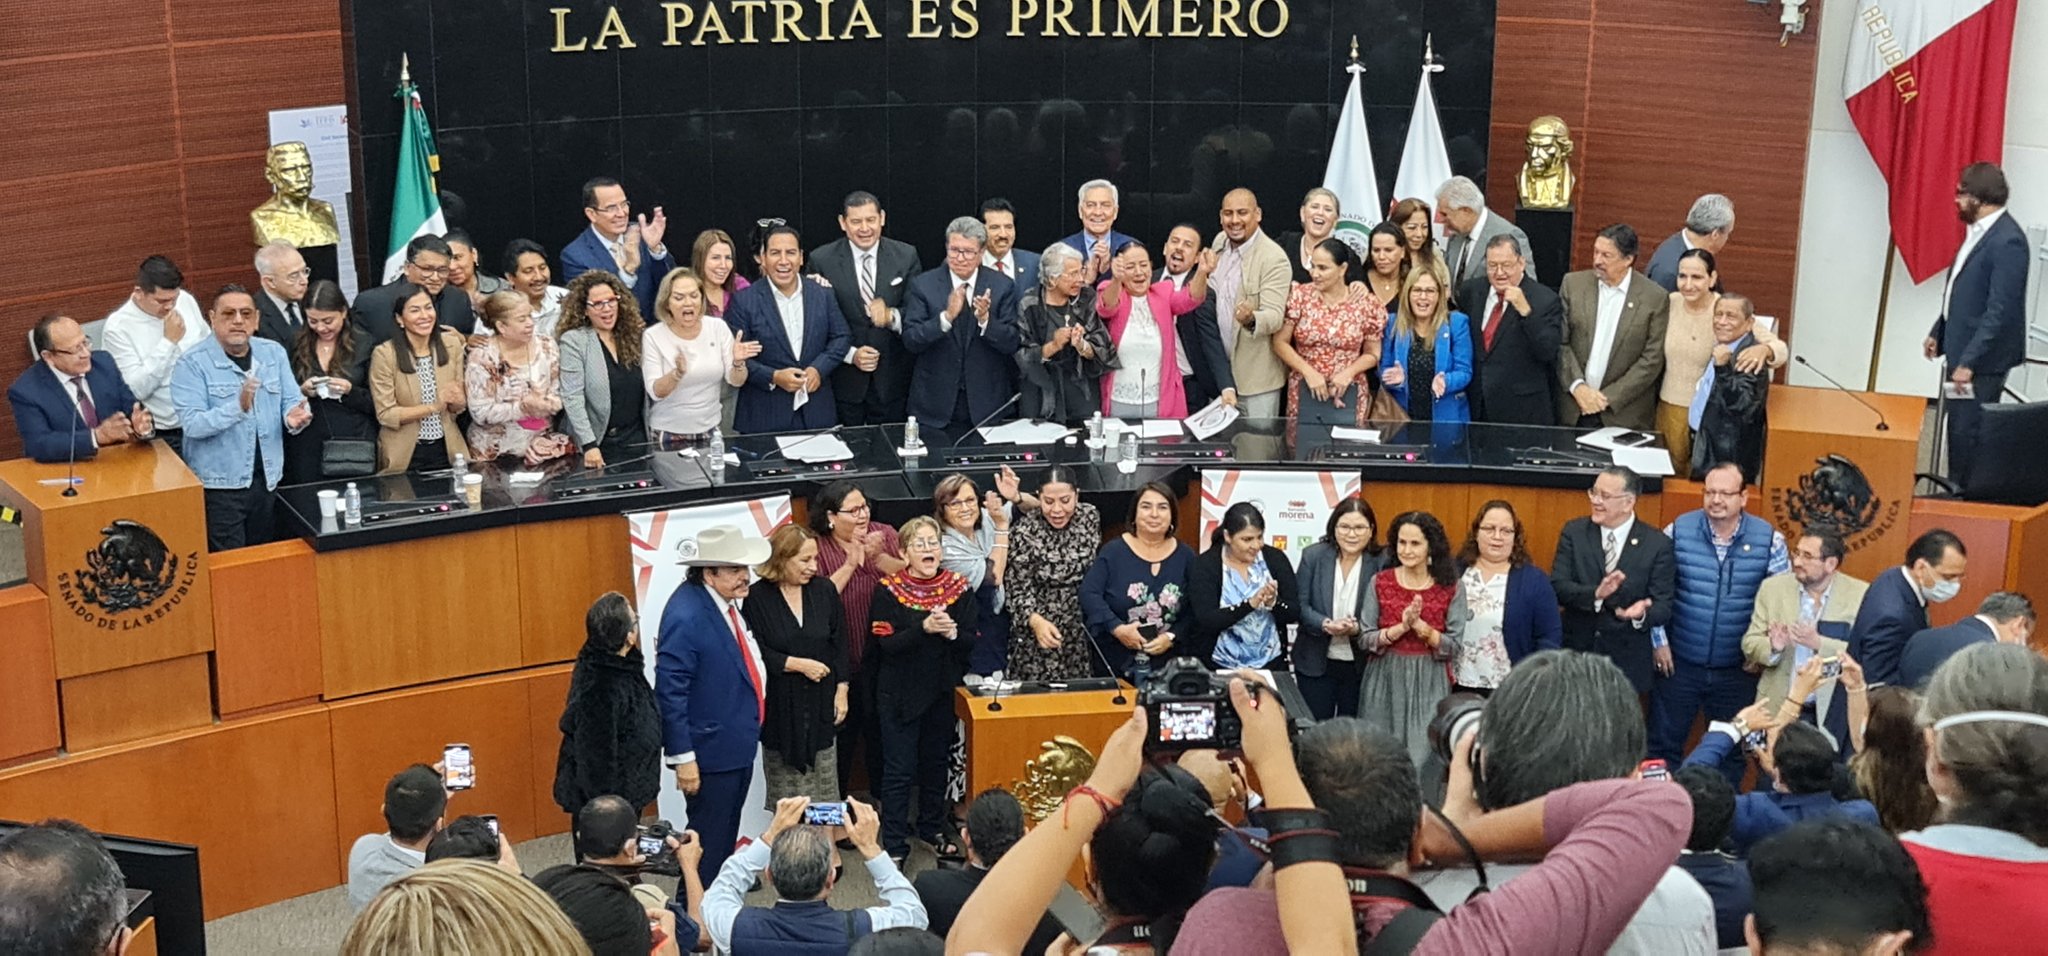 Alejandro Armenta fue elegido como el candidato de Morena para presidir la Mesa Directiva del Senado de la República mexicana (Foto: Twitter/@armentapuebla_)